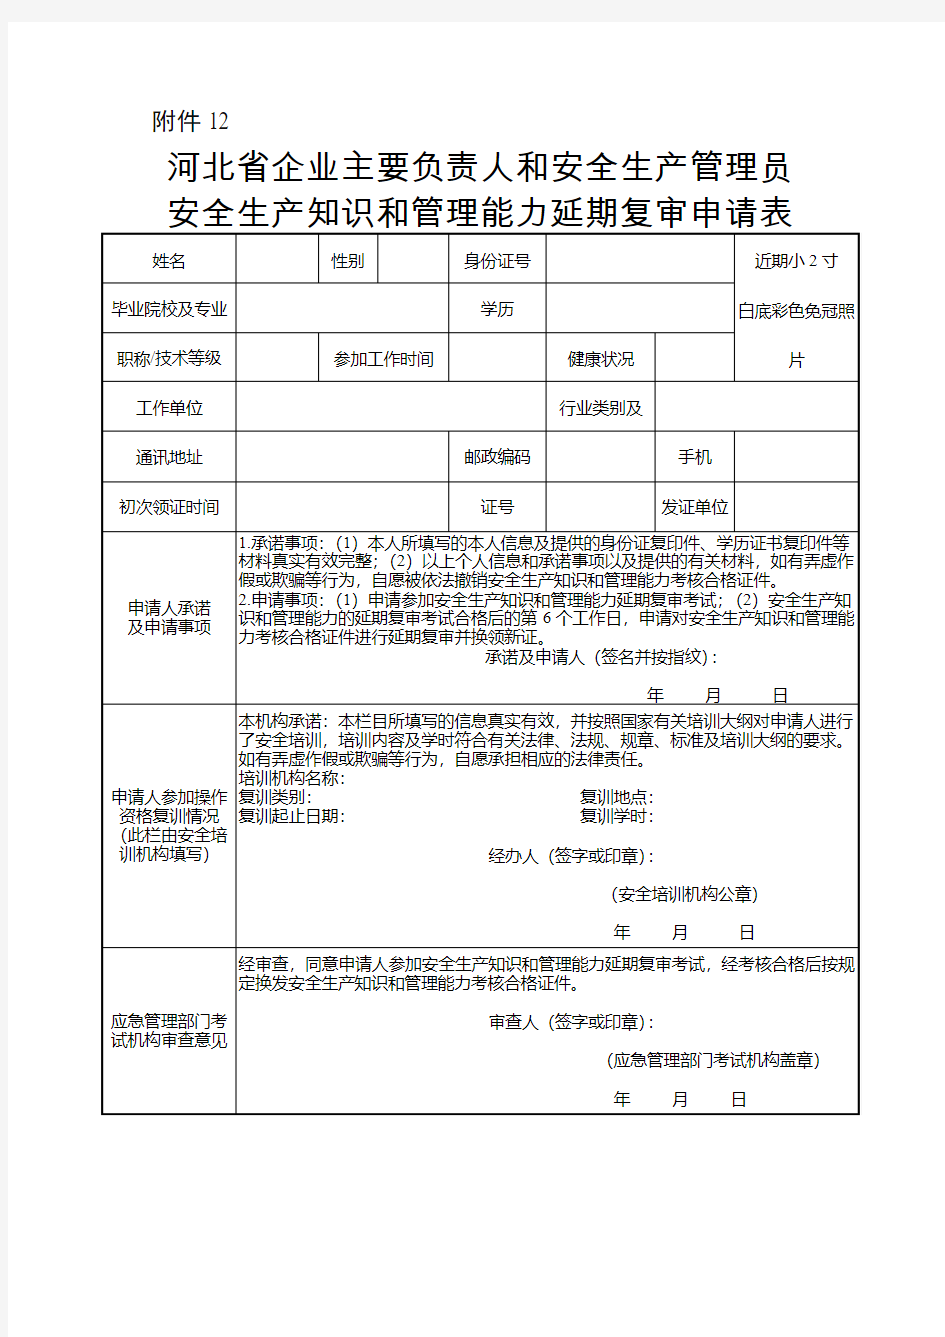 (换证)河北省企业主要负责人和安全生产管理员安全生产知识和管理能力延期复审申请表(换证填写)